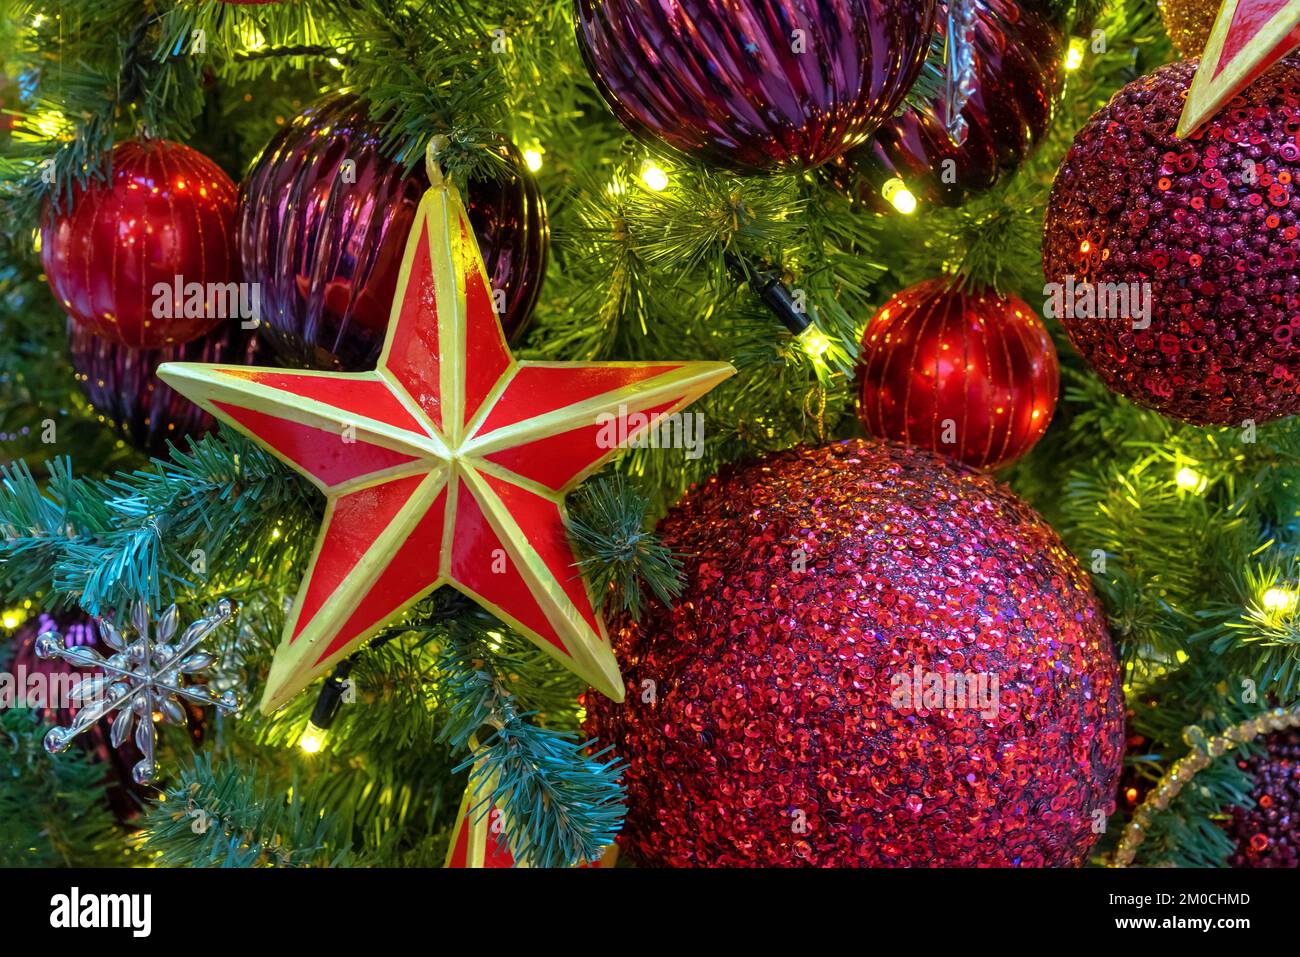 Estrella roja de cinco puntas con un borde dorado en el árbol de Navidad con guirnaldas. Foto de stock